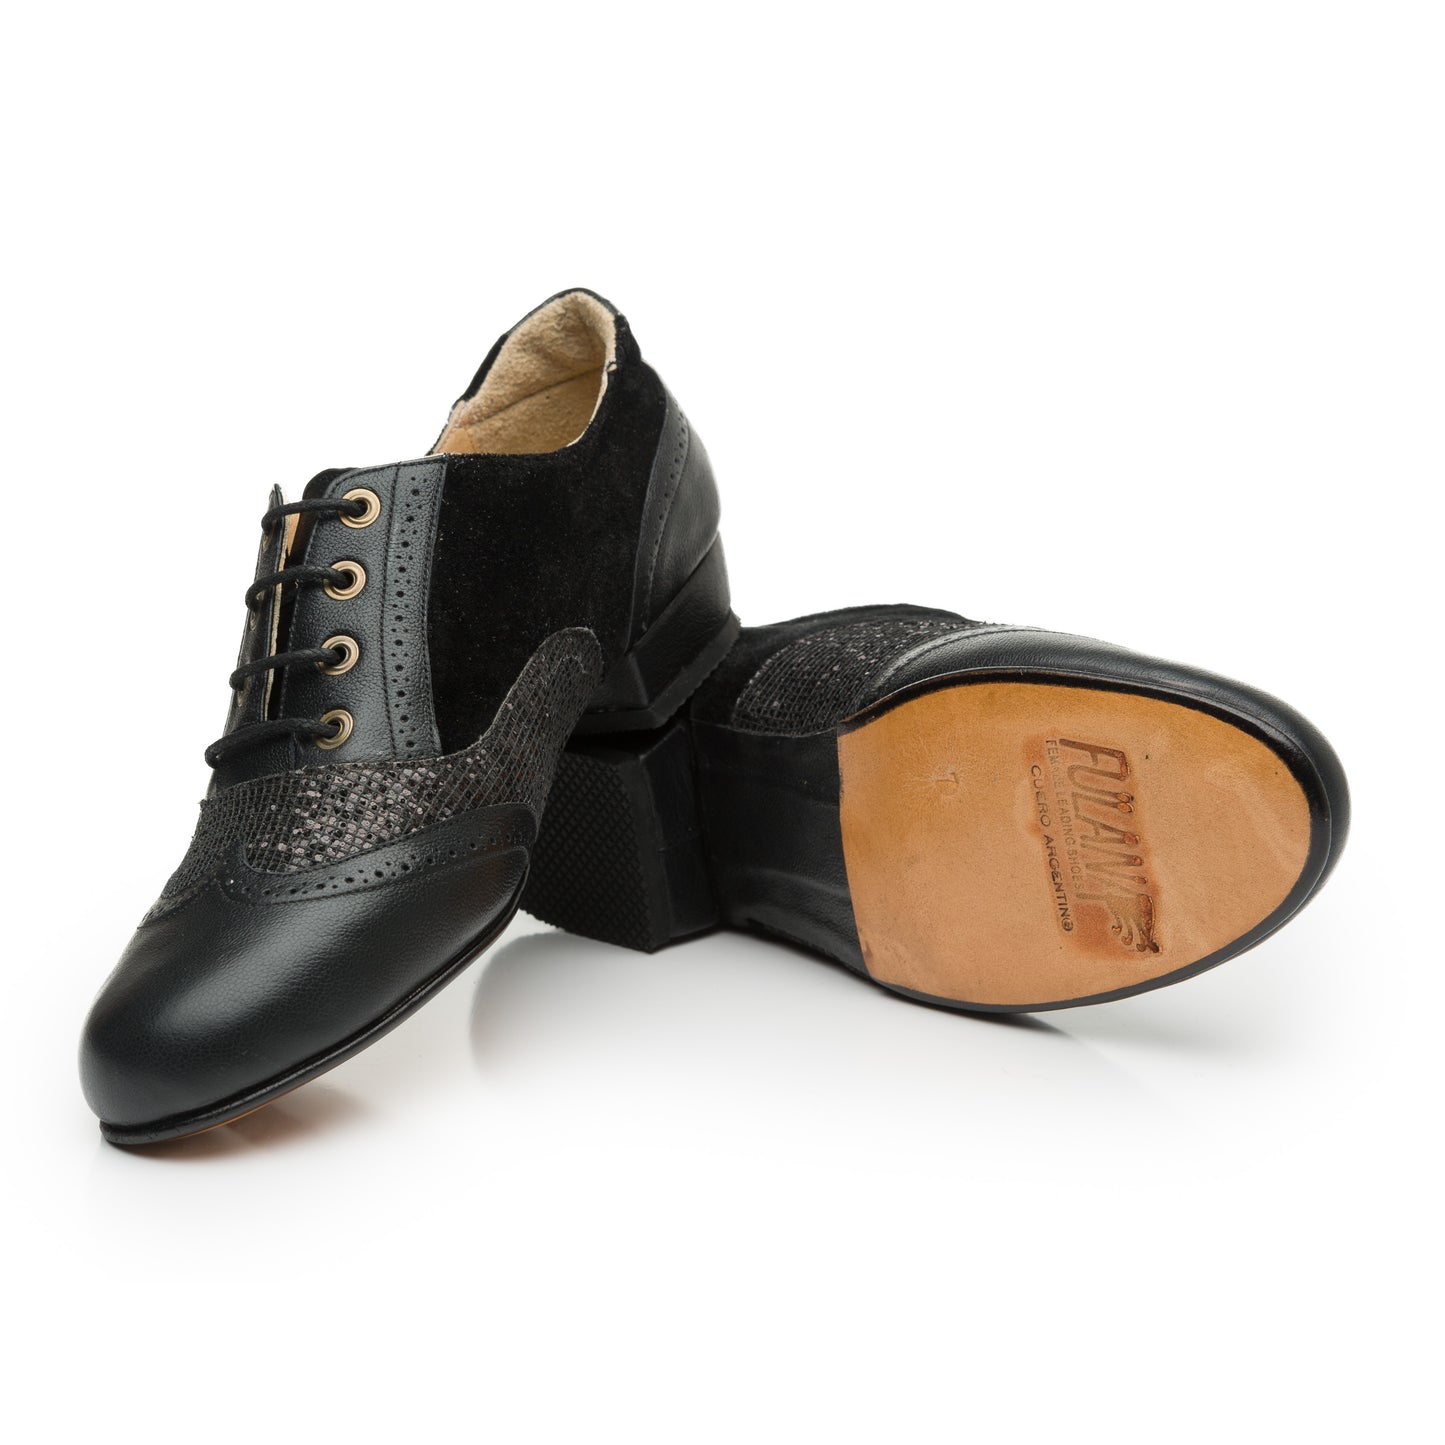 Fulana Handmade tango shoes (Oxford Curvy- Black Shiny)